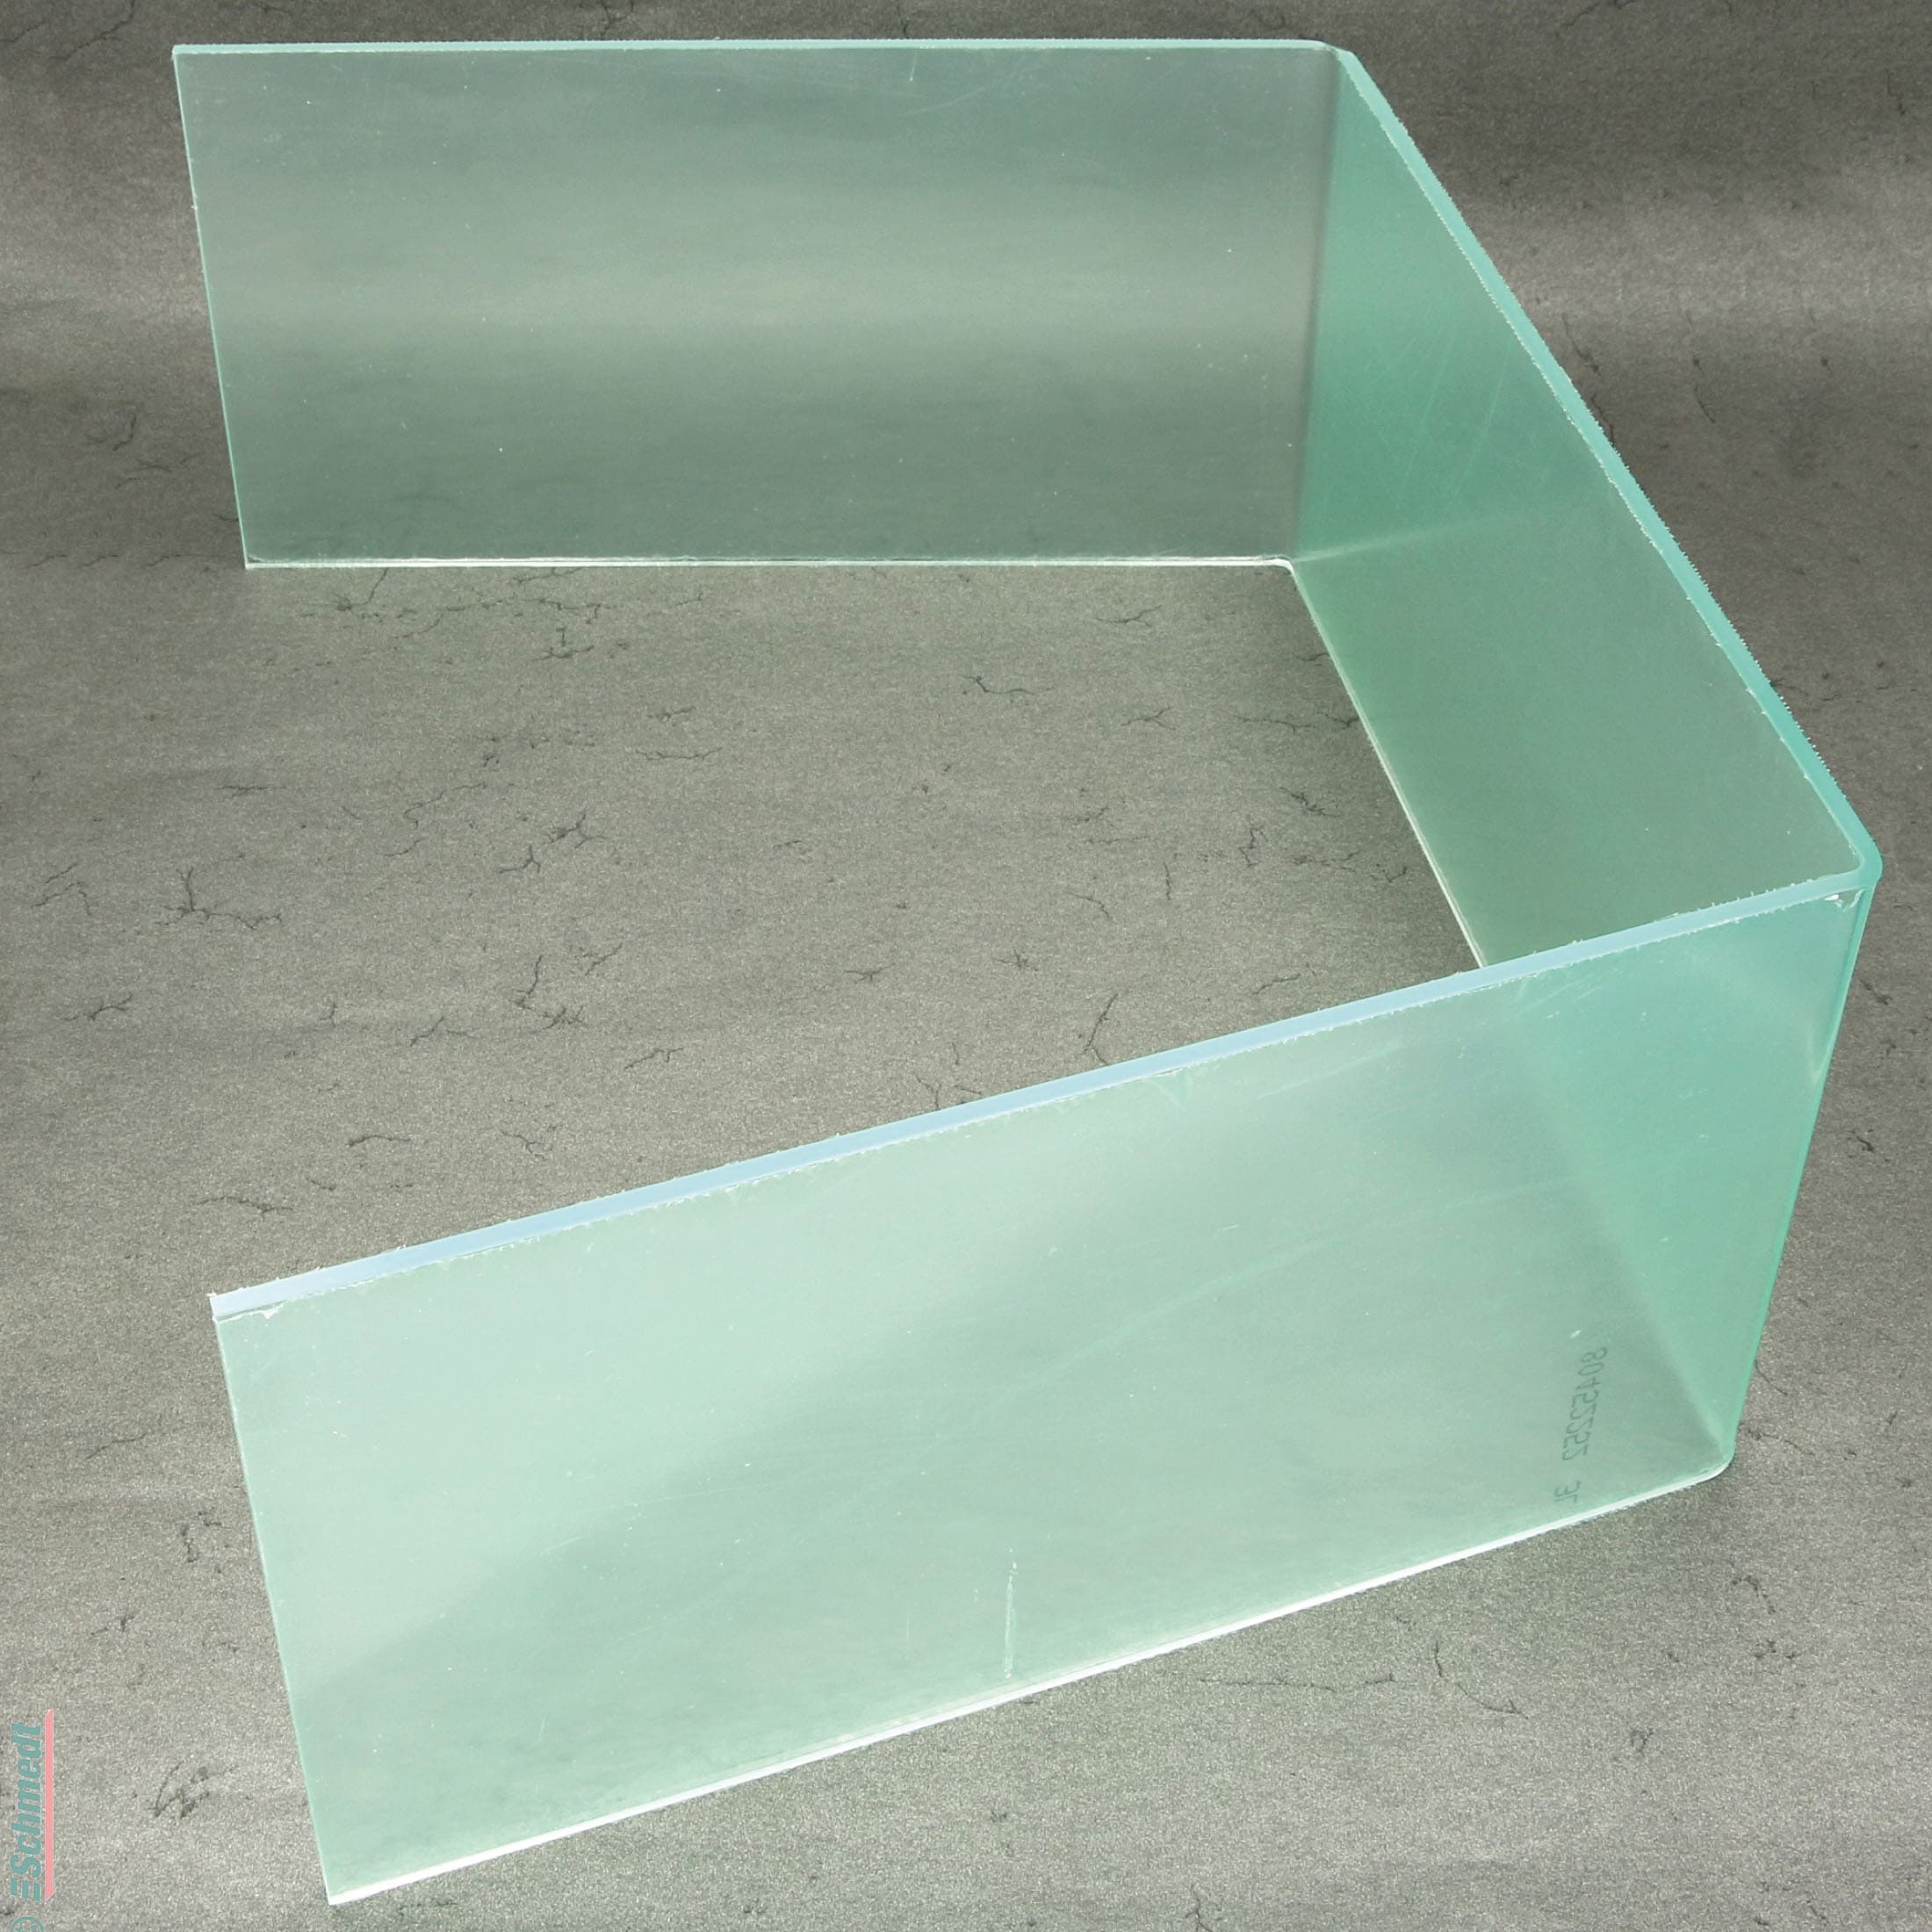 Pantalla de protección de vidrio acrílico - Altura: 250 mm, grosor: 6 mm - para delimitar el espacio en el que las virutas de la goma de bor...